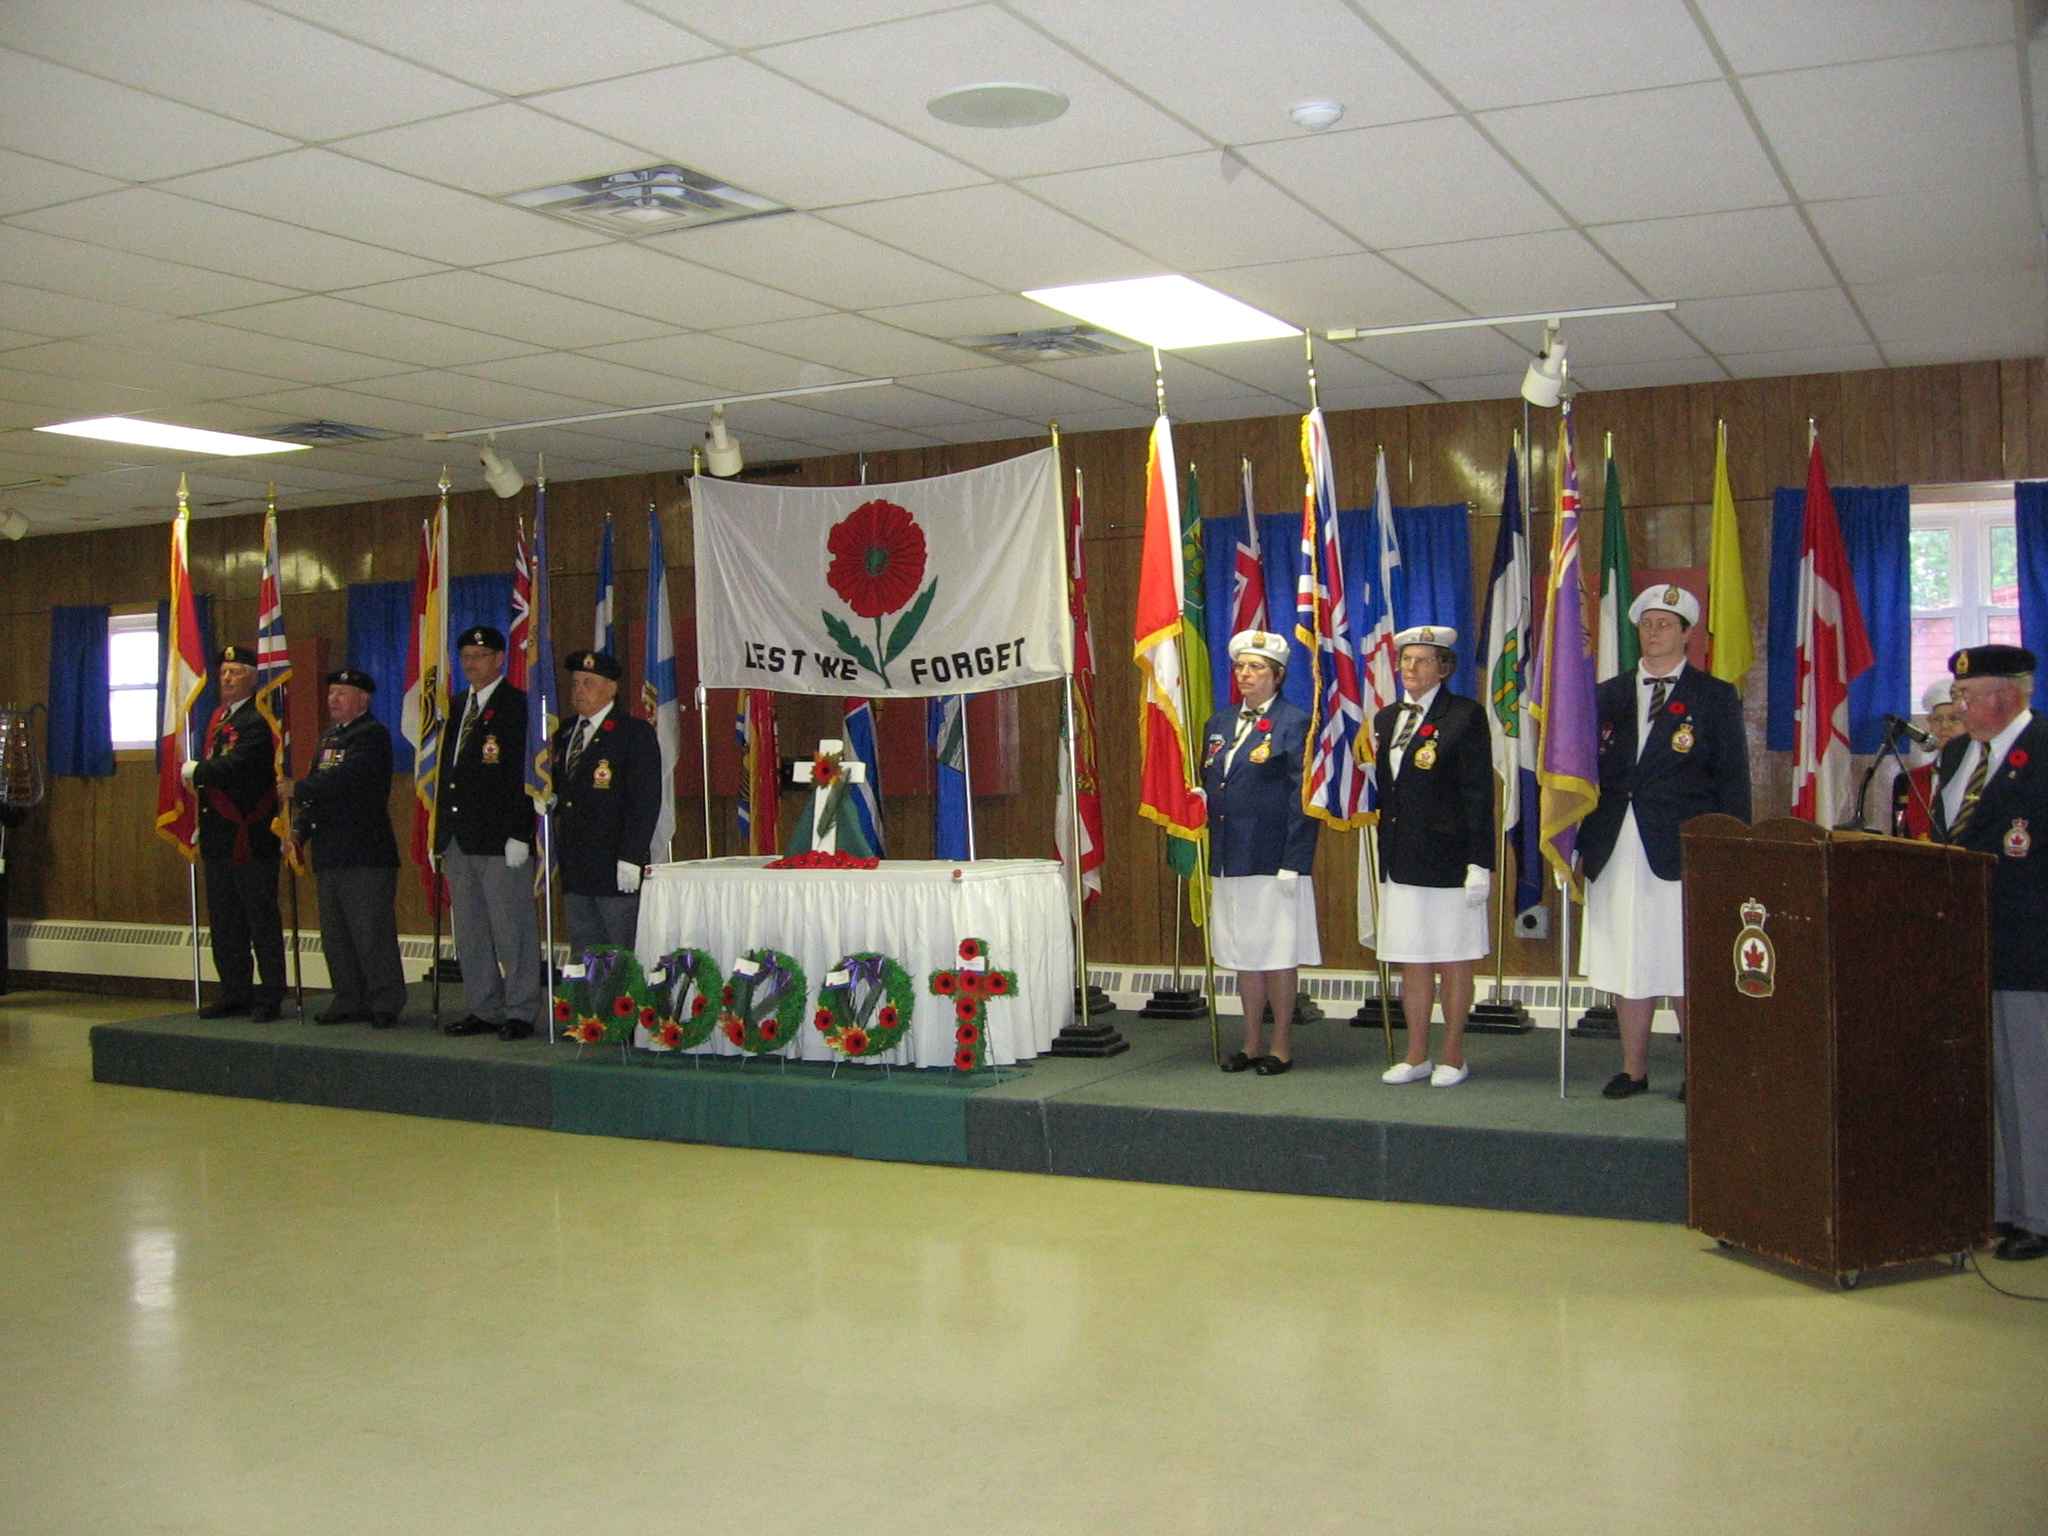 Remembrance Services Nov. 11th 2005